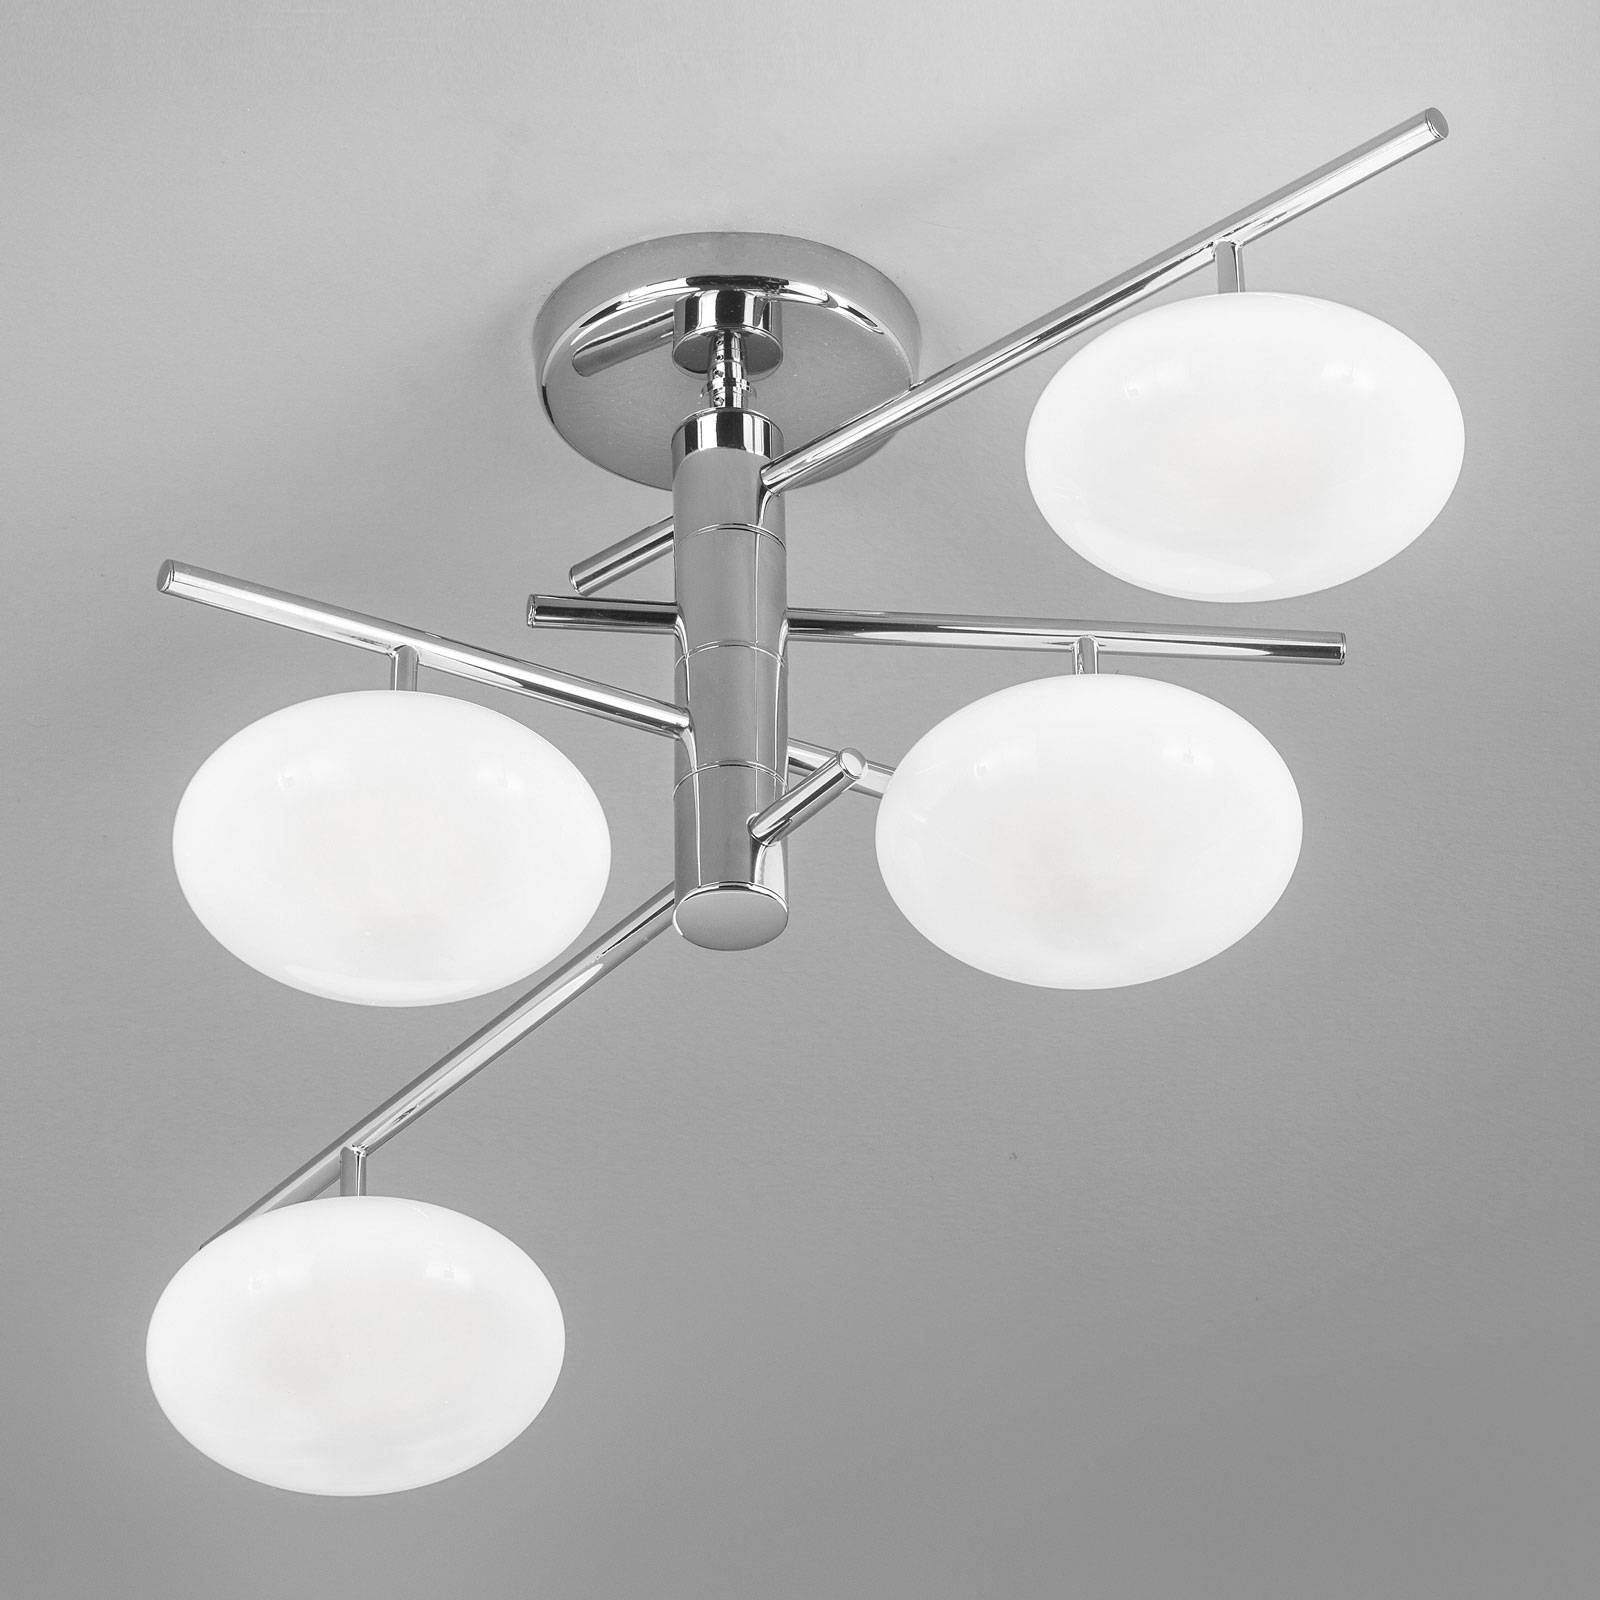 Plafondlamp Dolce 4-lamps, chroom/witte kappen